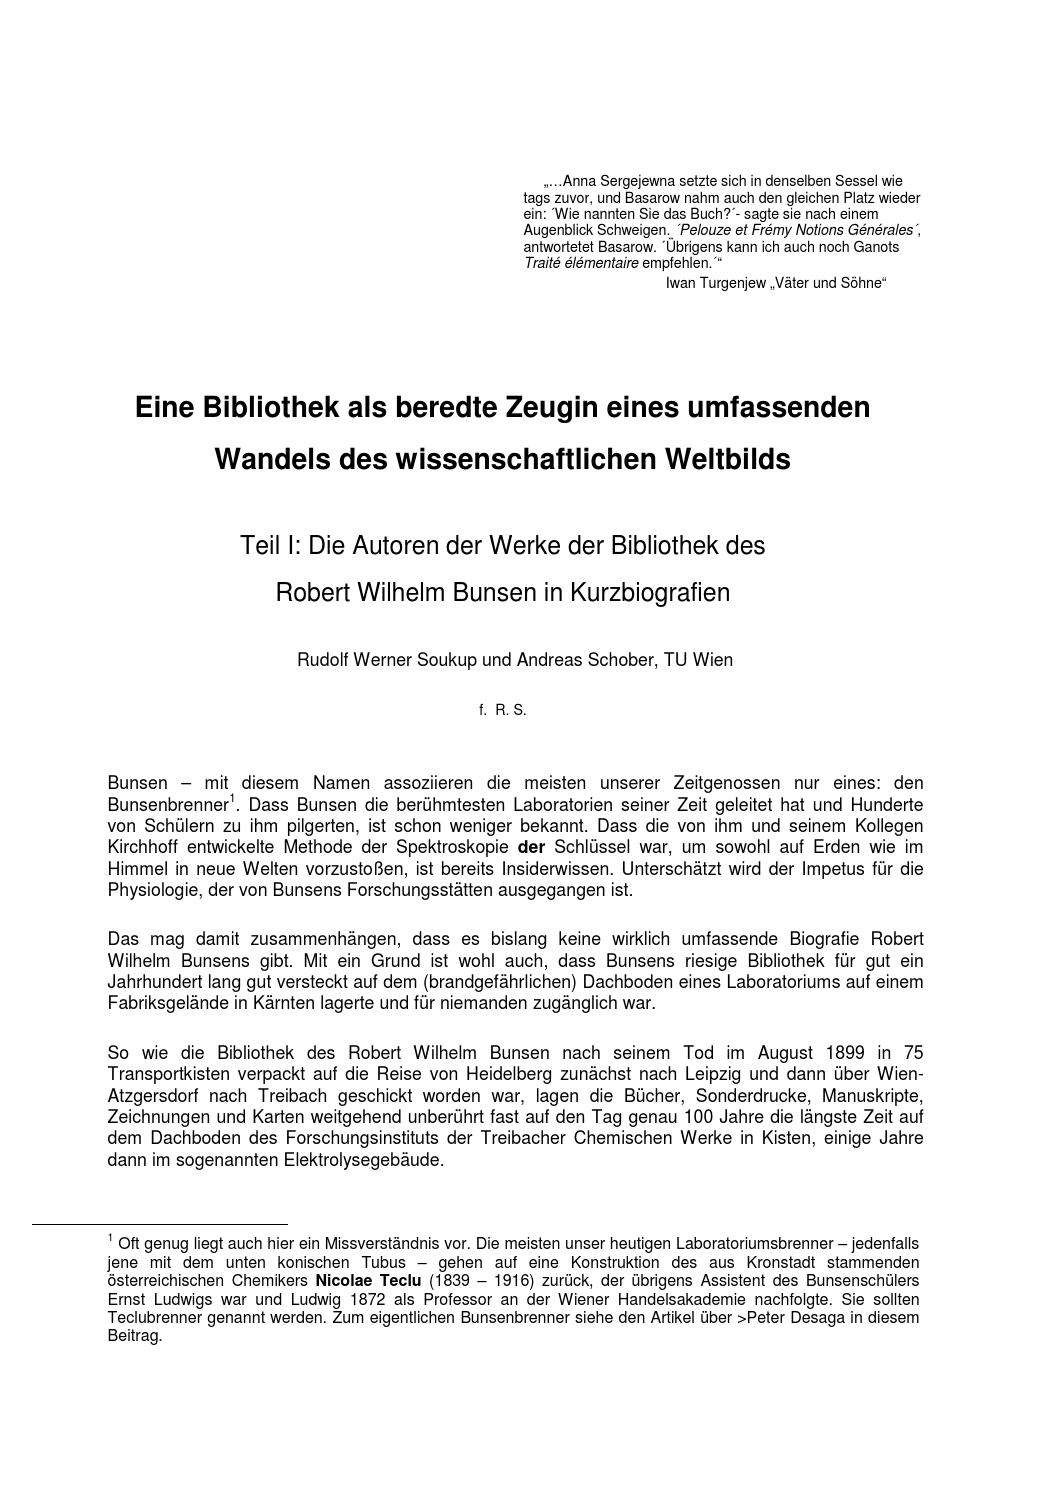 Vögel Im Garten Bestimmen Einzigartig Autoren Der Bunsenbibliothek Teil 1 by Auer Von Welsbach